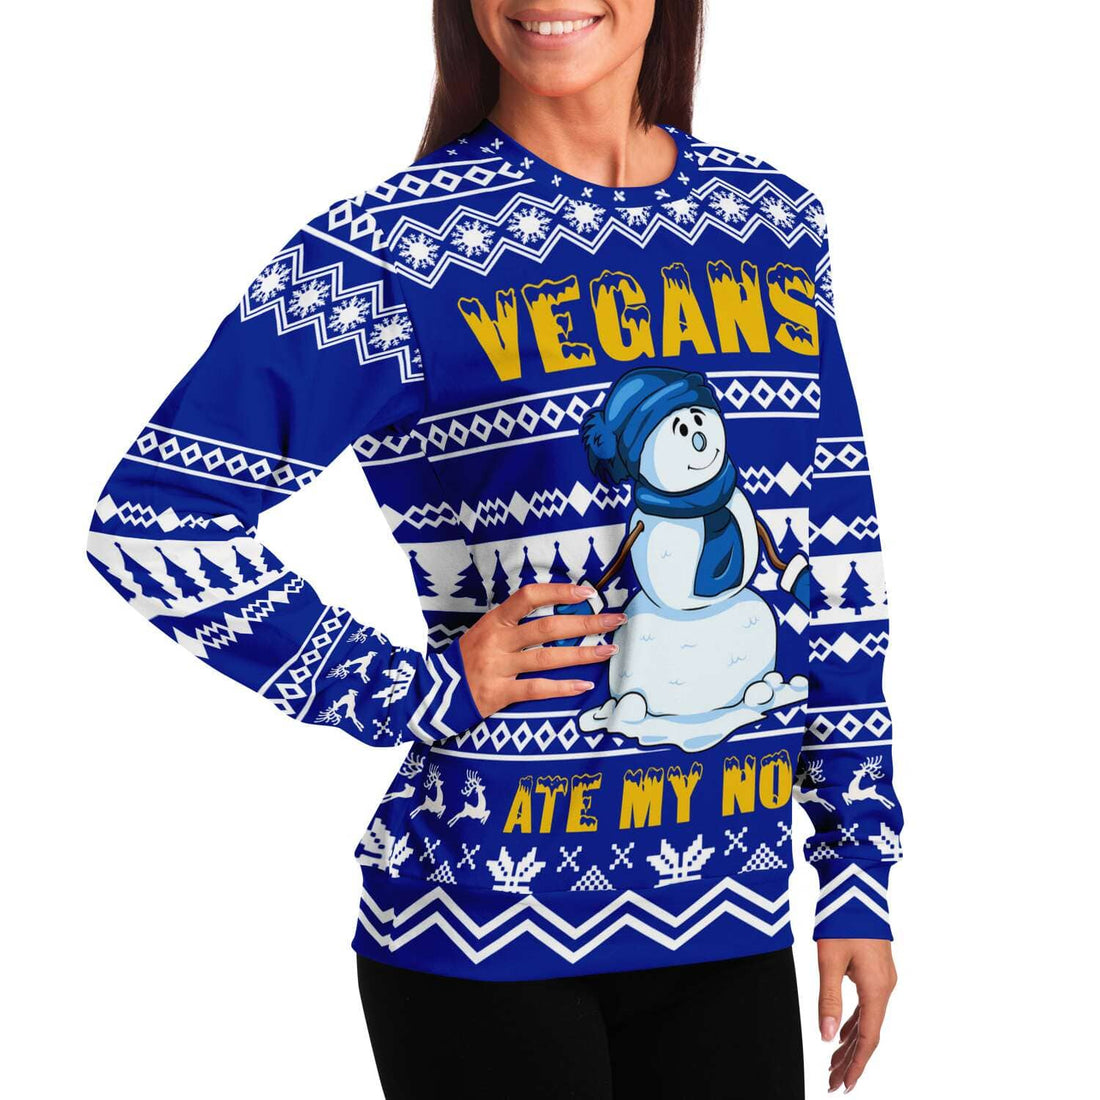 Kate McEnroe New York Vegans Ate My Nose Ugly Christmas SweaterSweatshirtSBSWF_D - 0303 - XS